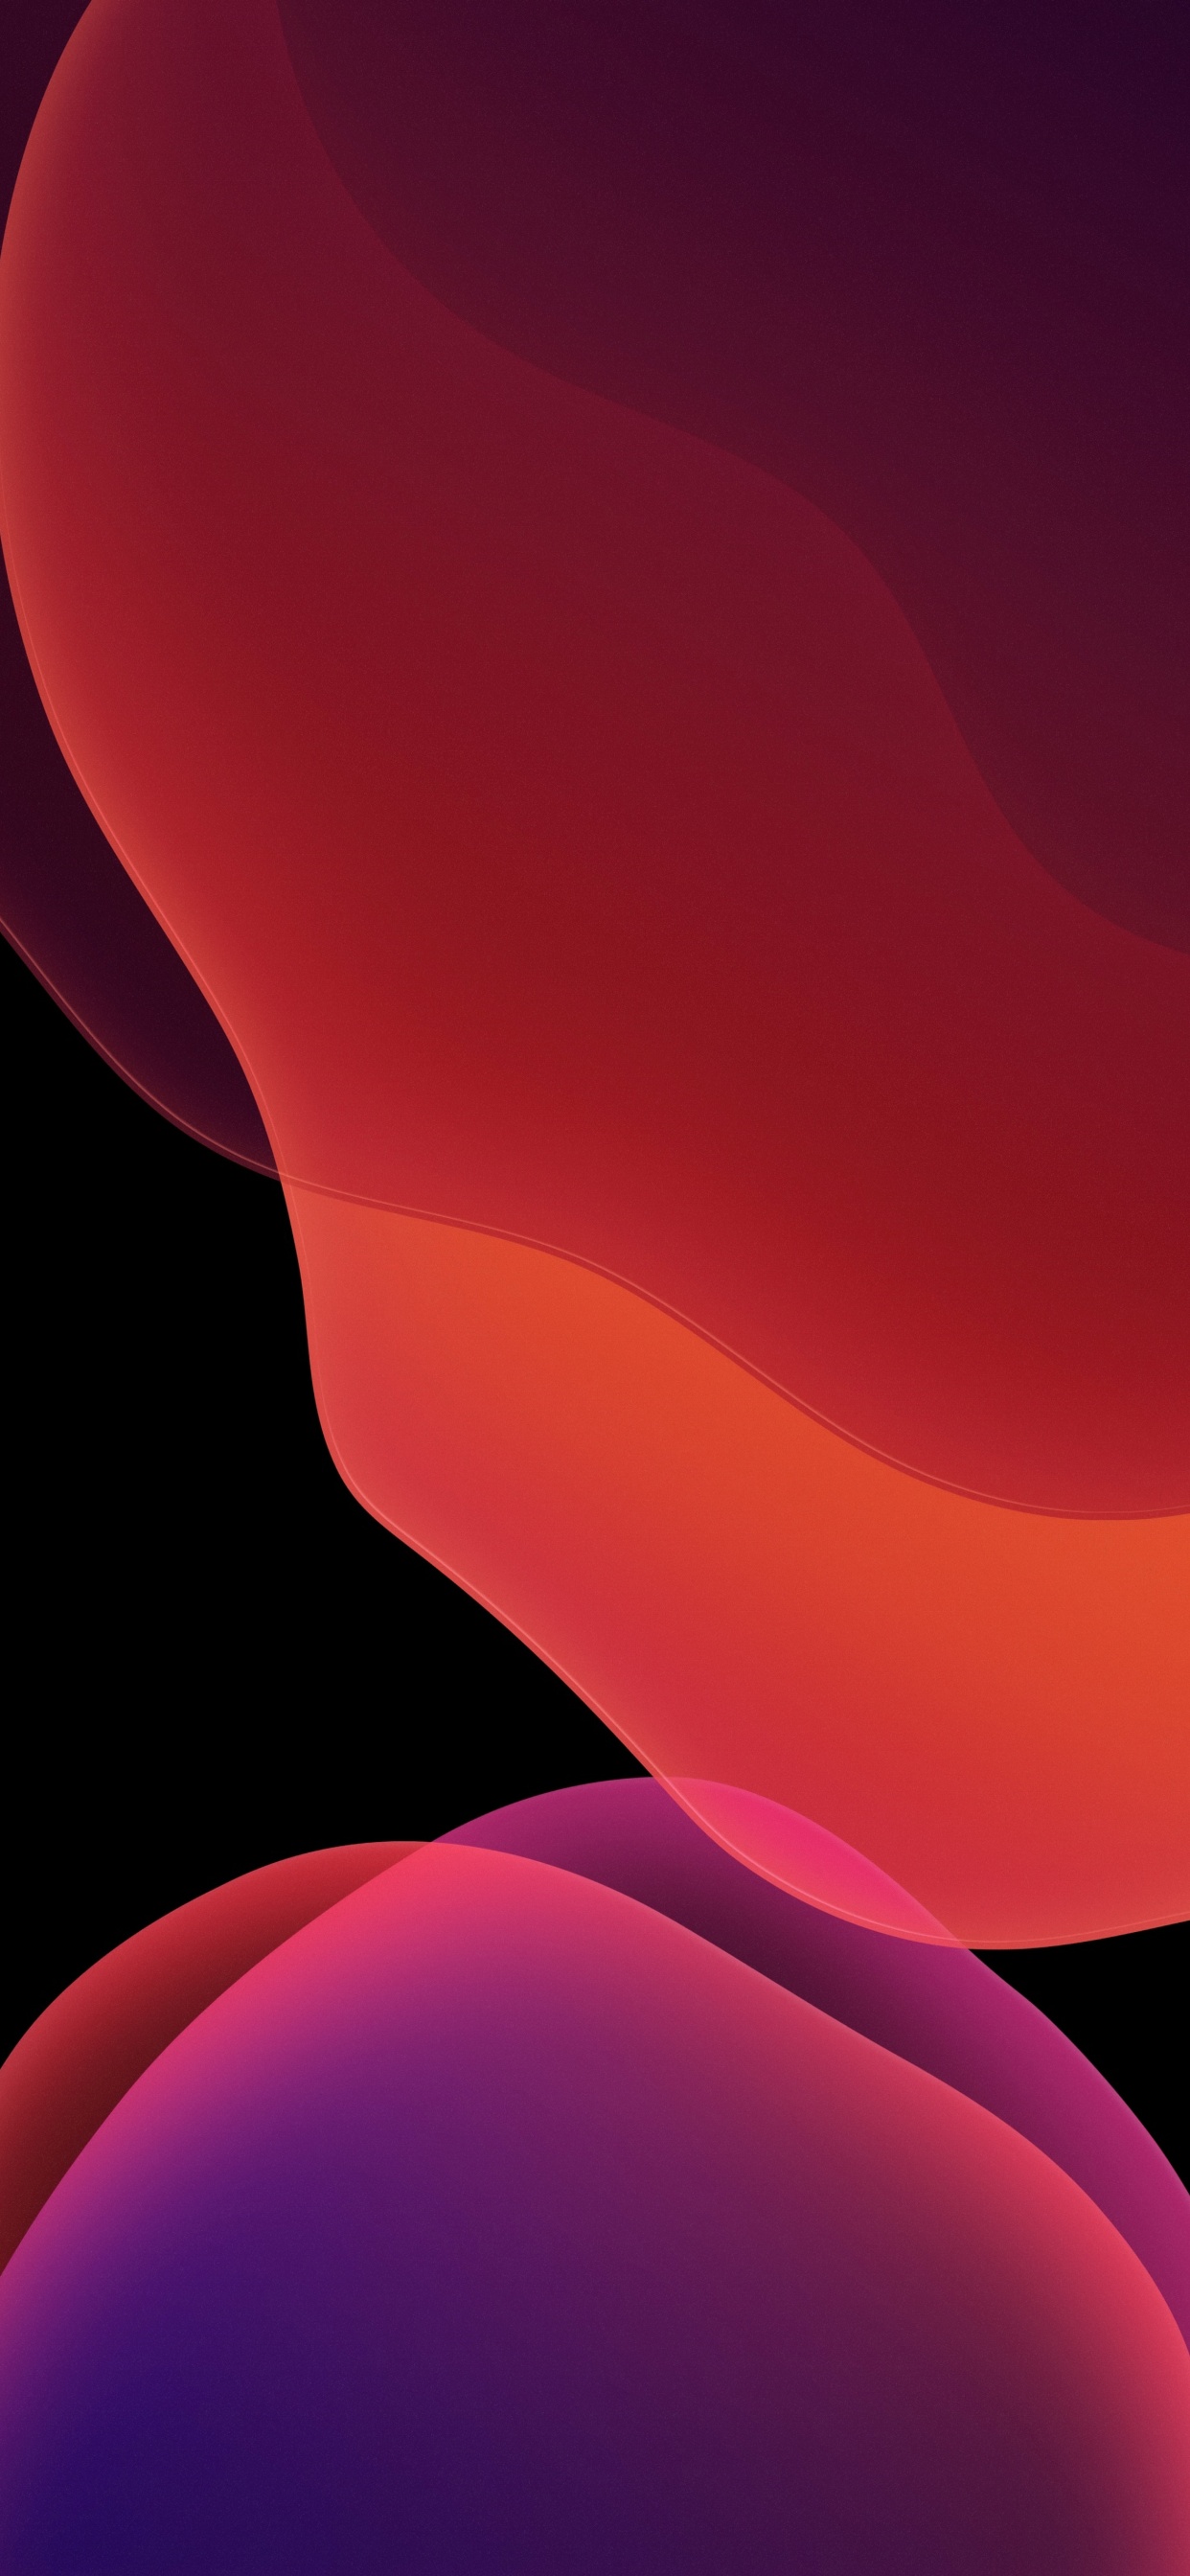 Hình nền iOS 13 4K: Hãy trải nghiệm sự hoàn hảo của hình nền iOS 13 4K với độ phân giải cực cao, tạo nên giác quan tuyệt vời cho màn hình thiết bị của bạn. Cùng khám phá một thế giới đầy màu sắc và sinh động với hình nền đẹp nhất từ trước đến nay!